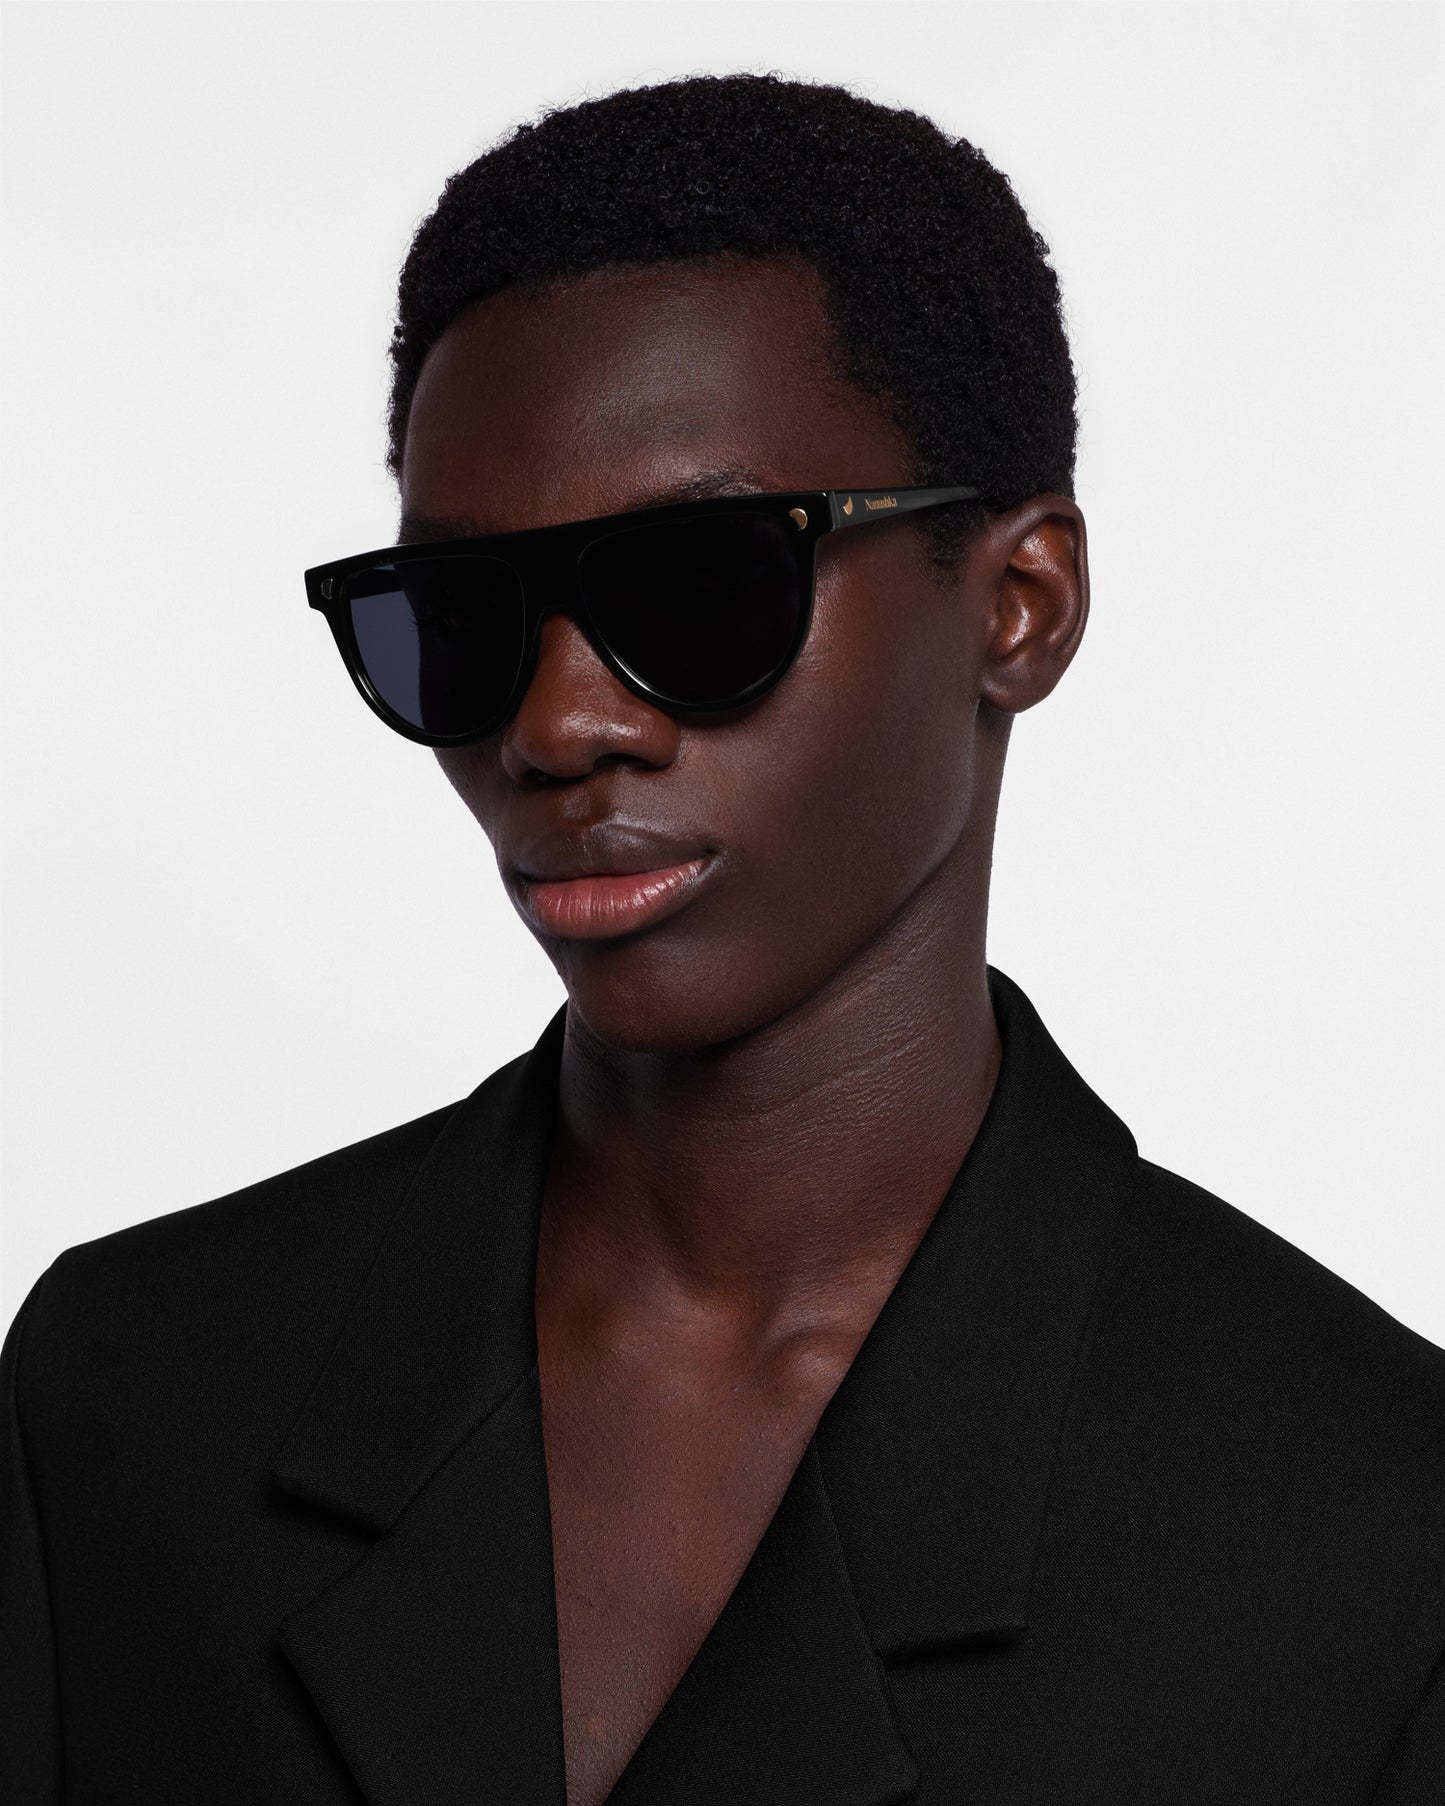 Coleen - Bio-Plastic Sunglasses - Black